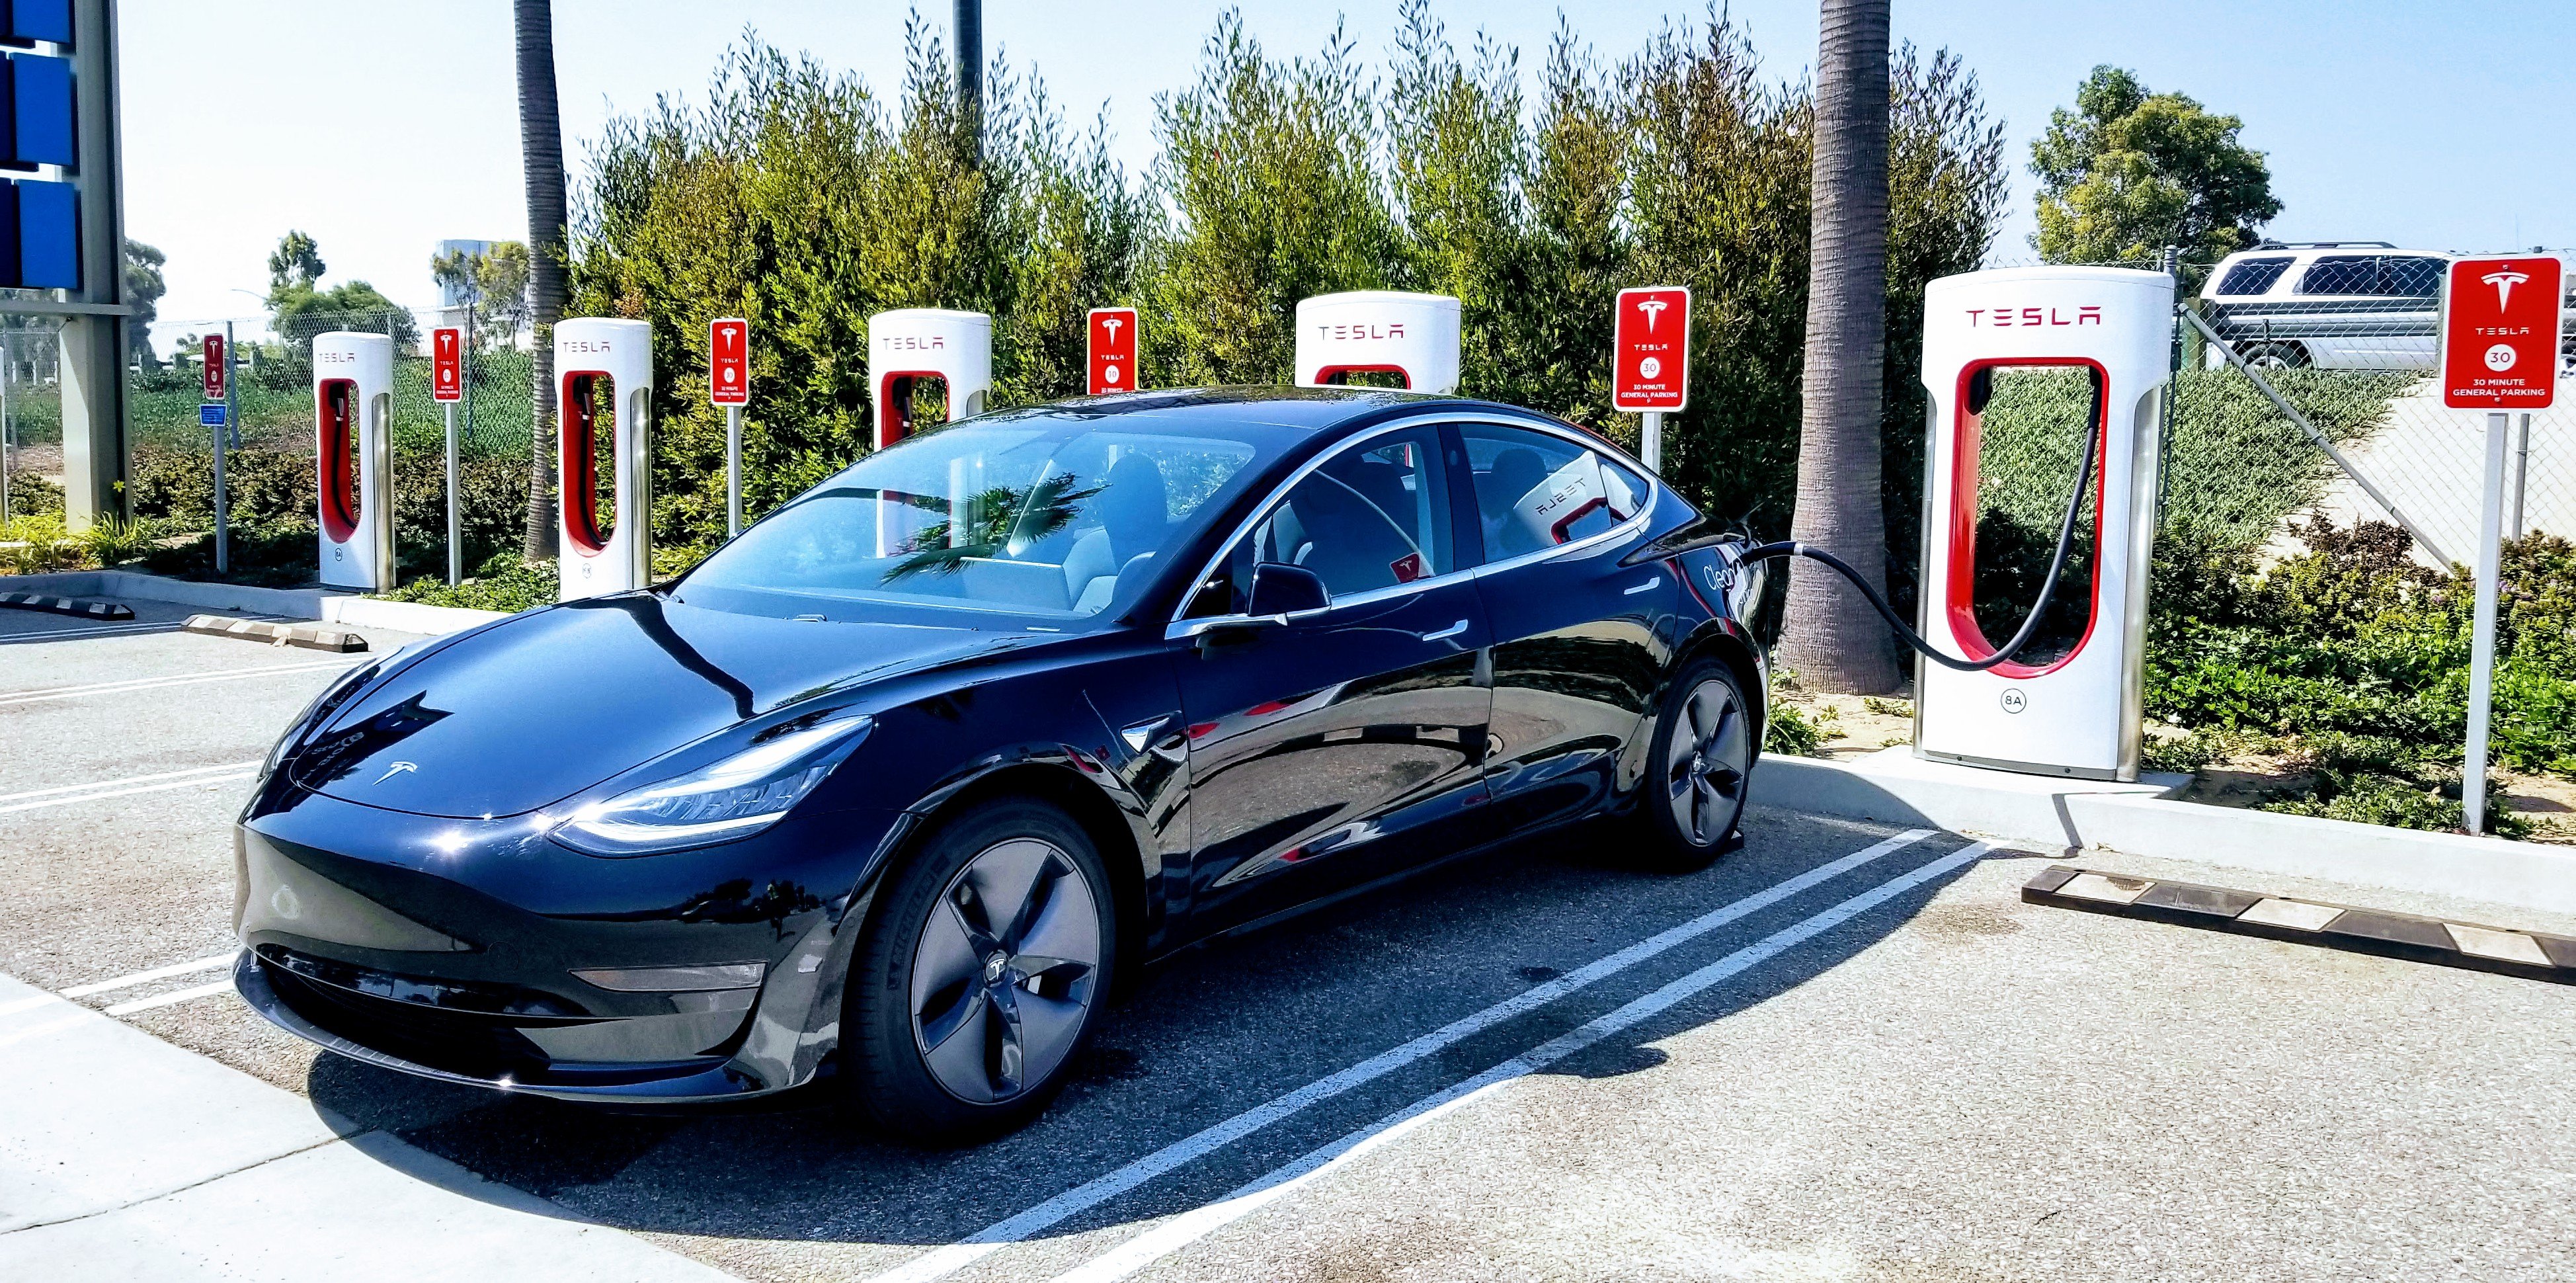 Tesla hối thúc khách hàng thanh toán tiền xe trong năm 2018 để tránh thuế